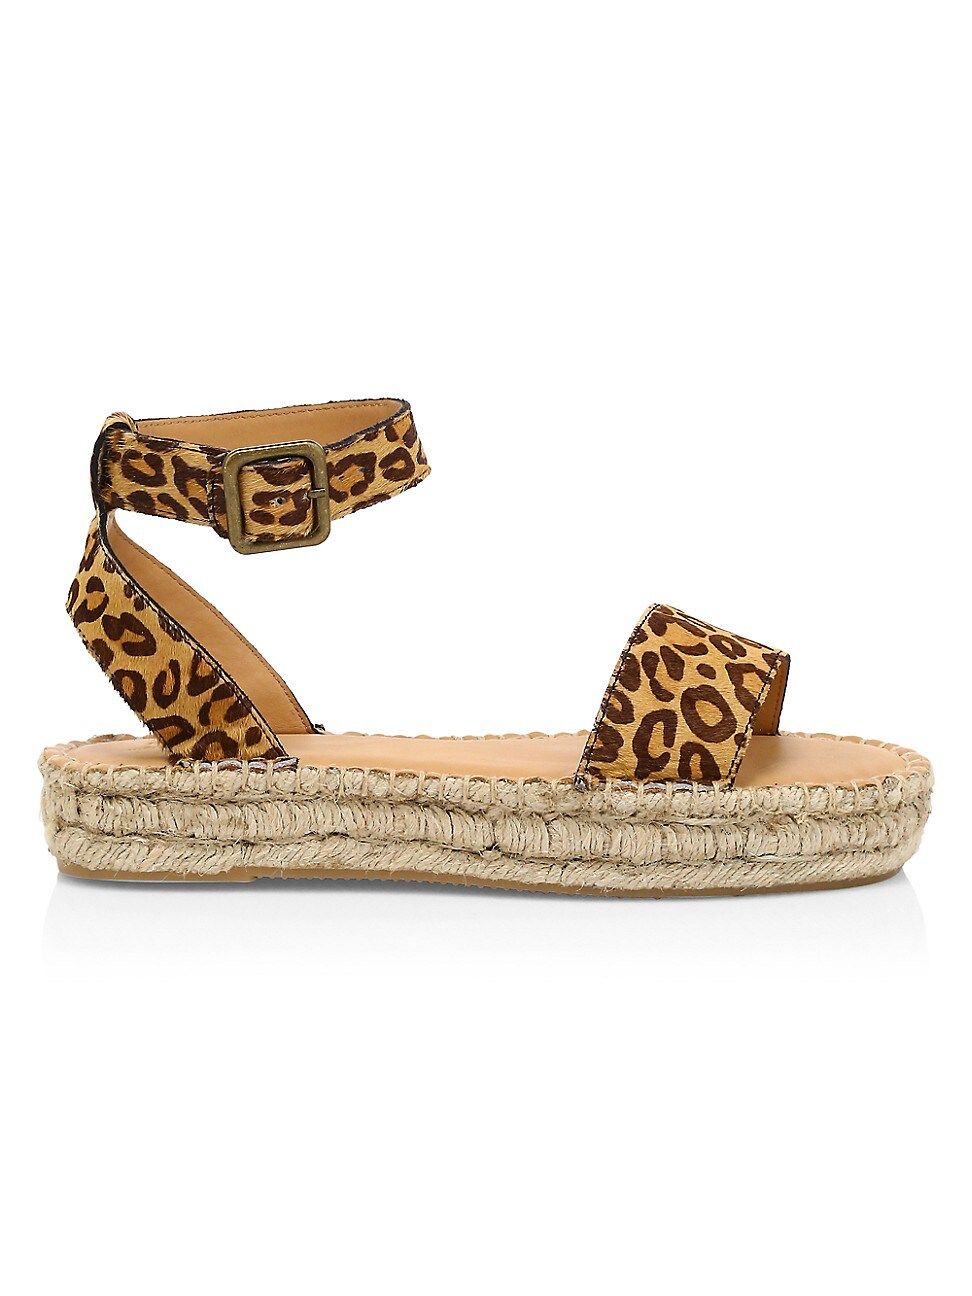 Soludos Women's Cadiz Leopard-Print Faux Calf Hair Espadrille Sandals - Leopard - Size 7.5 | Saks Fifth Avenue